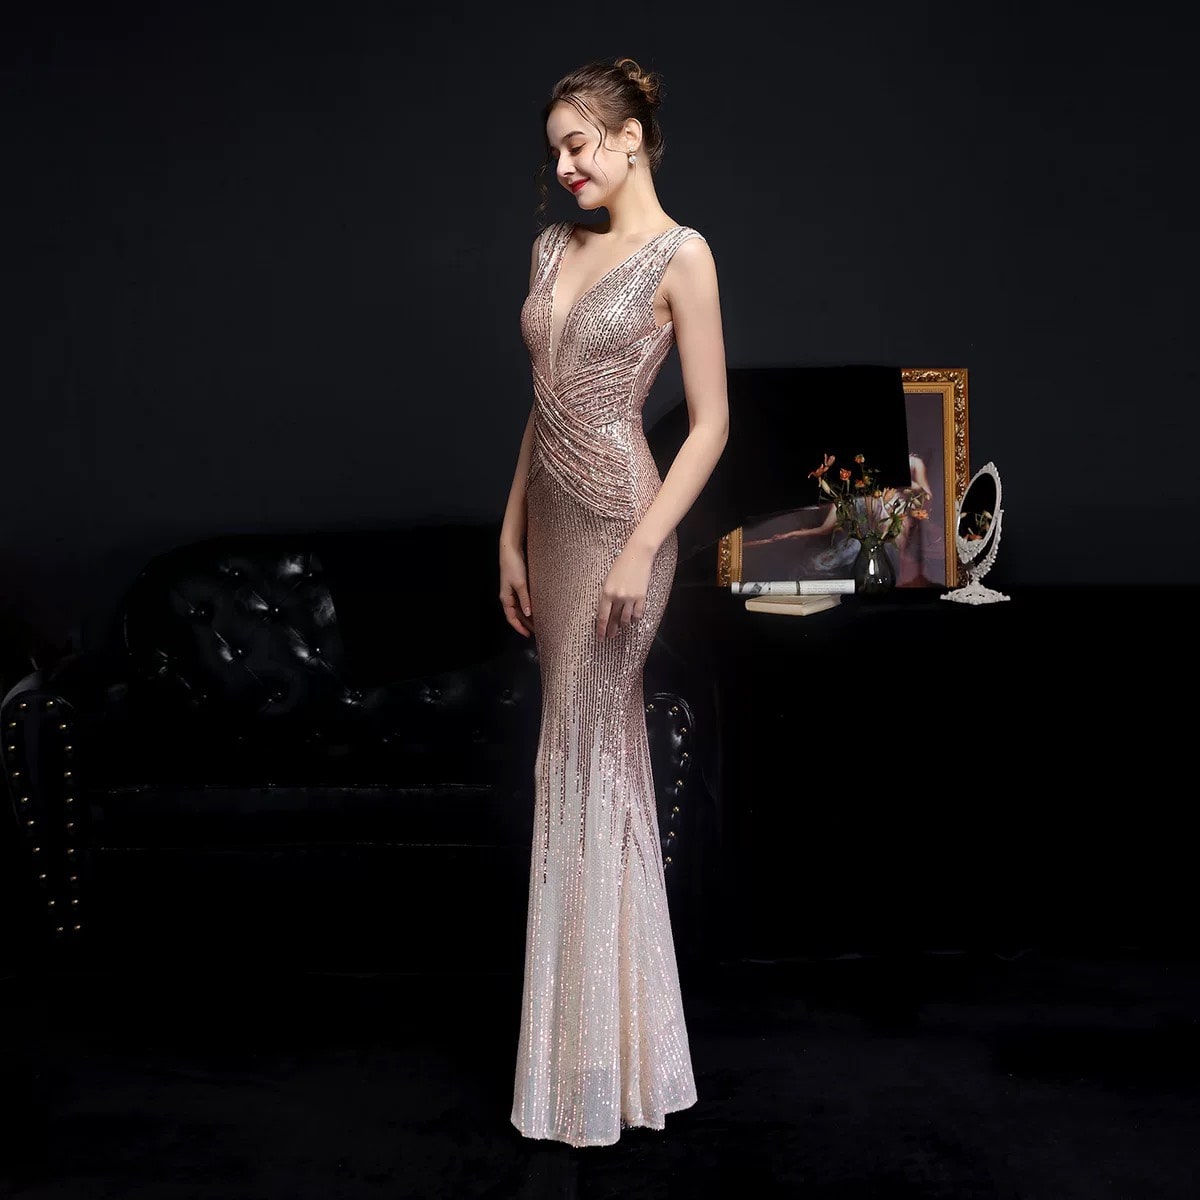 Thanh An dress